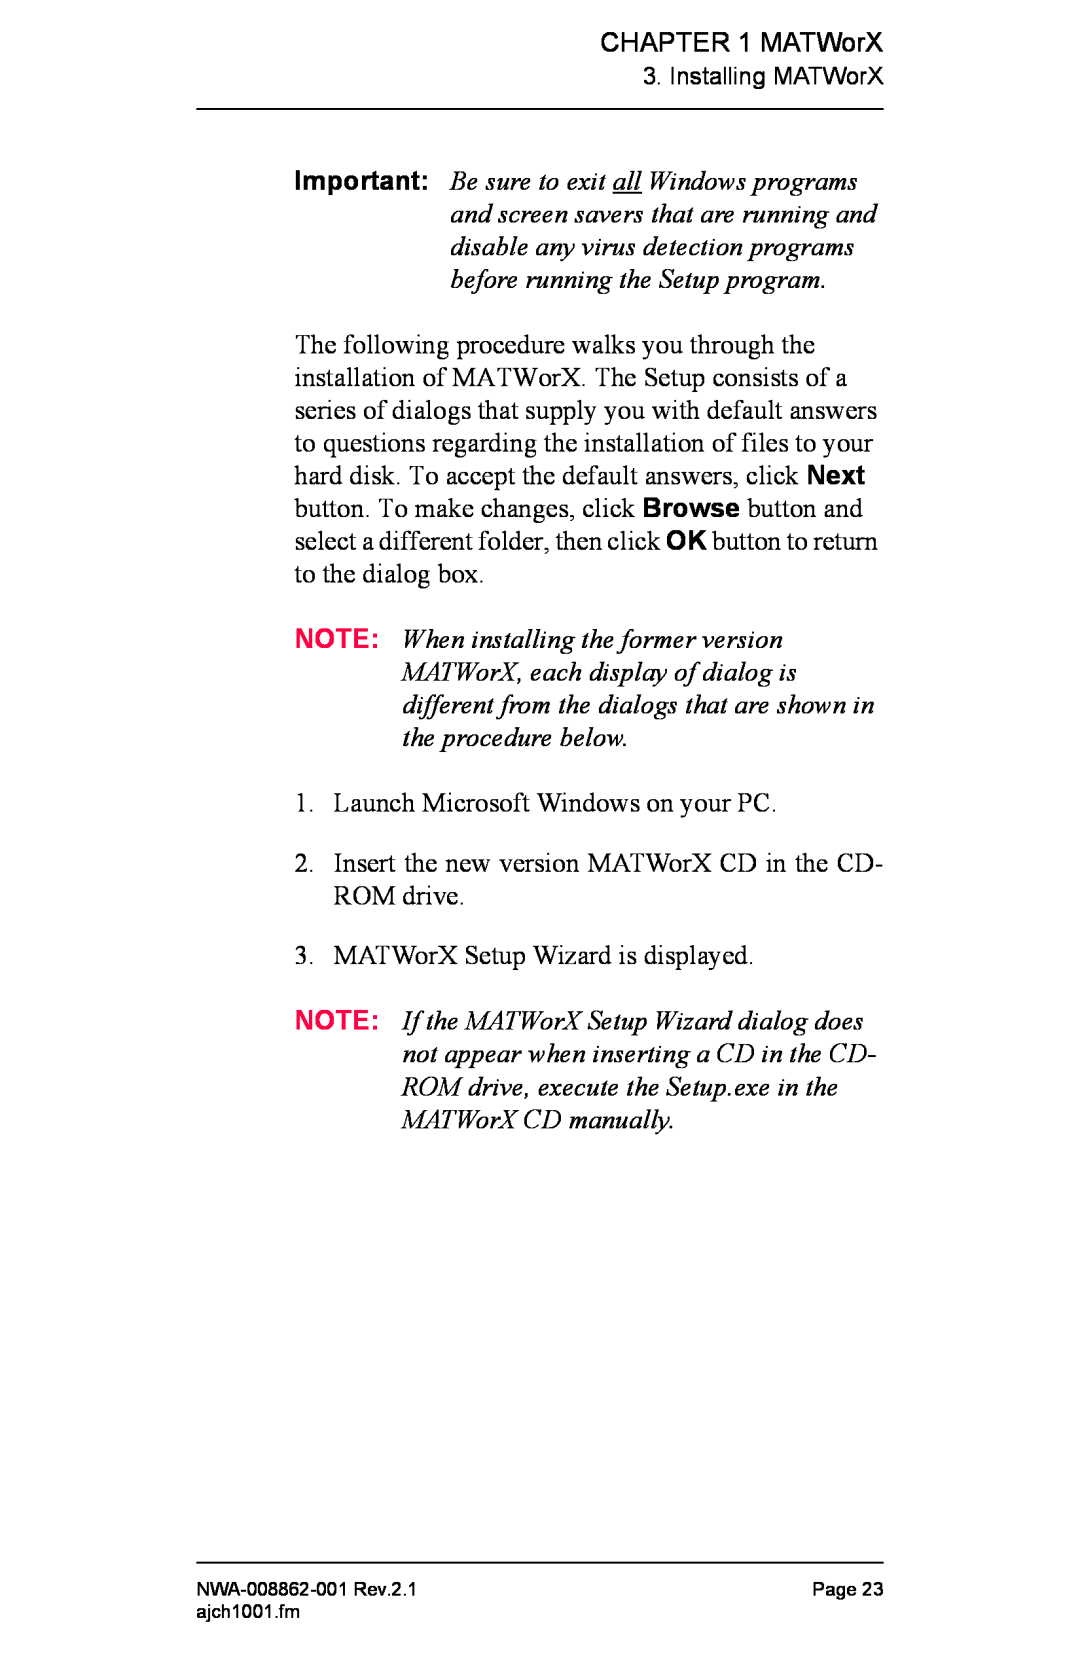 NEC NWA-008862-001 manual MATWorX 